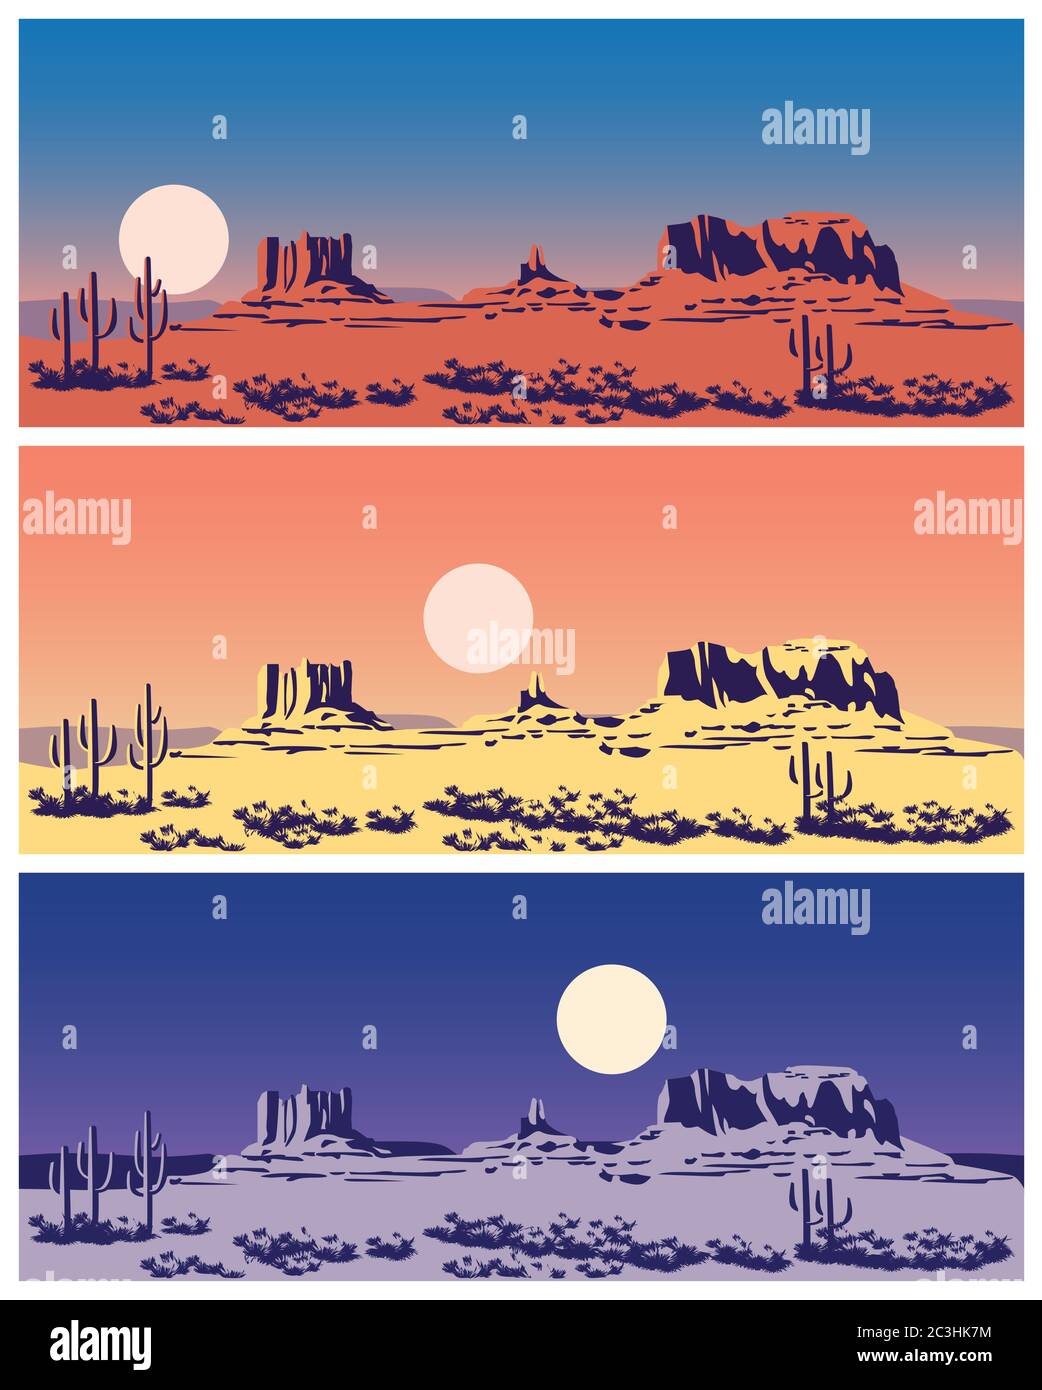 Stilisierte Vektorgrafik zum Thema Wilder Westen, der große Canyon, Berge und Wüsten. Nahtlos horizontal, wenn nötig Stock Vektor